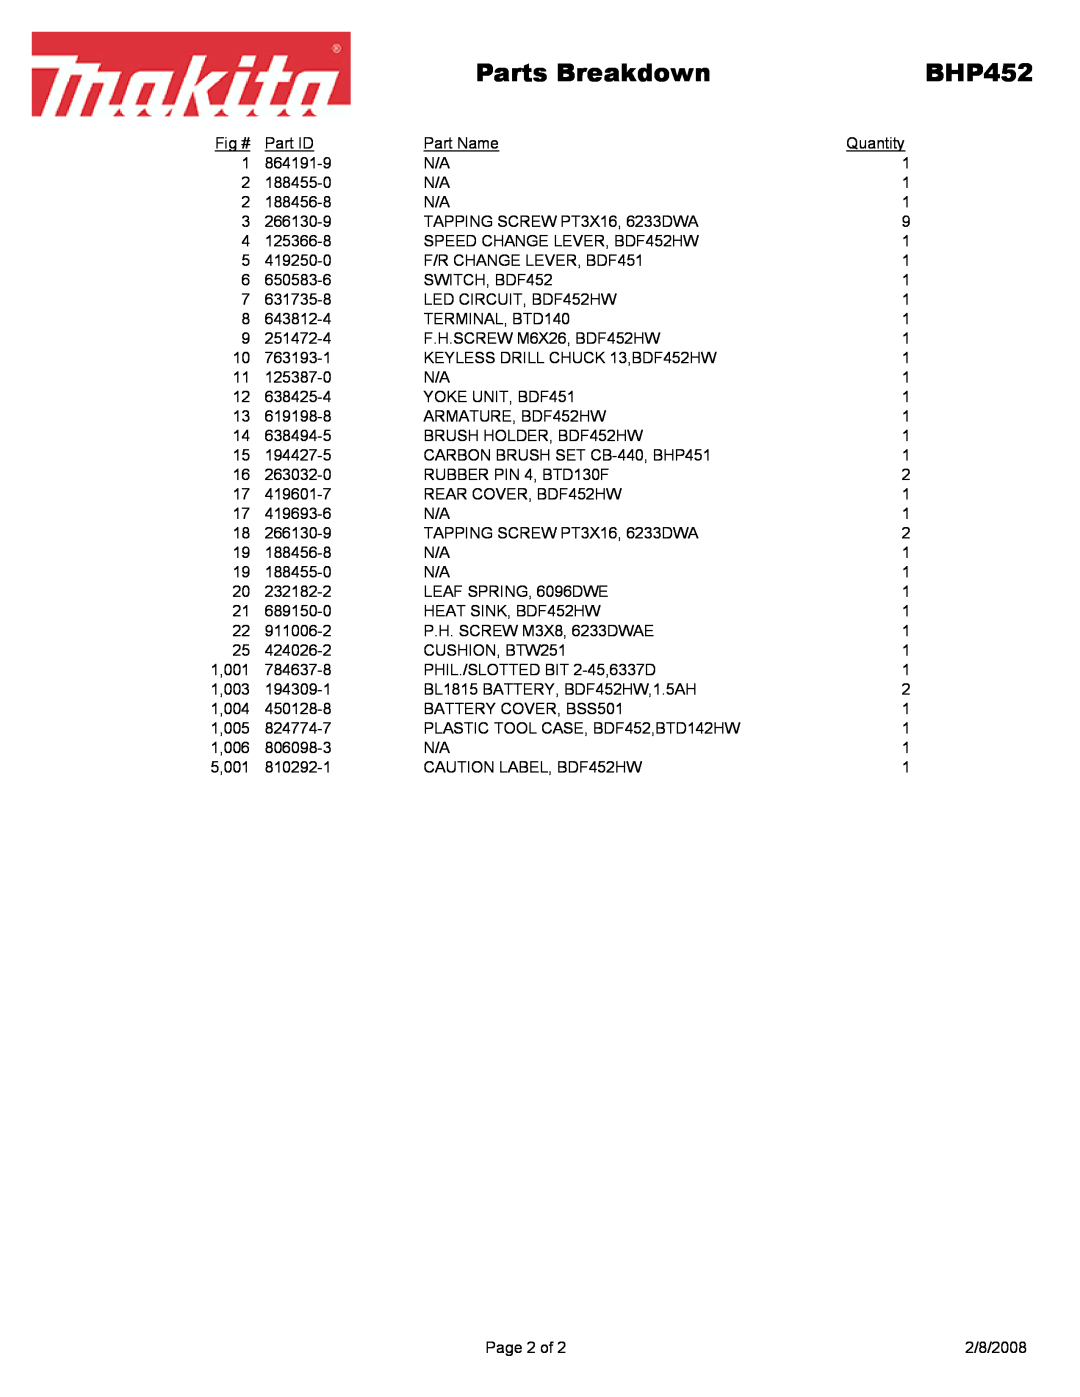 Makita BHP452 manual Parts Breakdown, 1,001, 1,003, 1,004, 1,005, 1,006, 5,001 